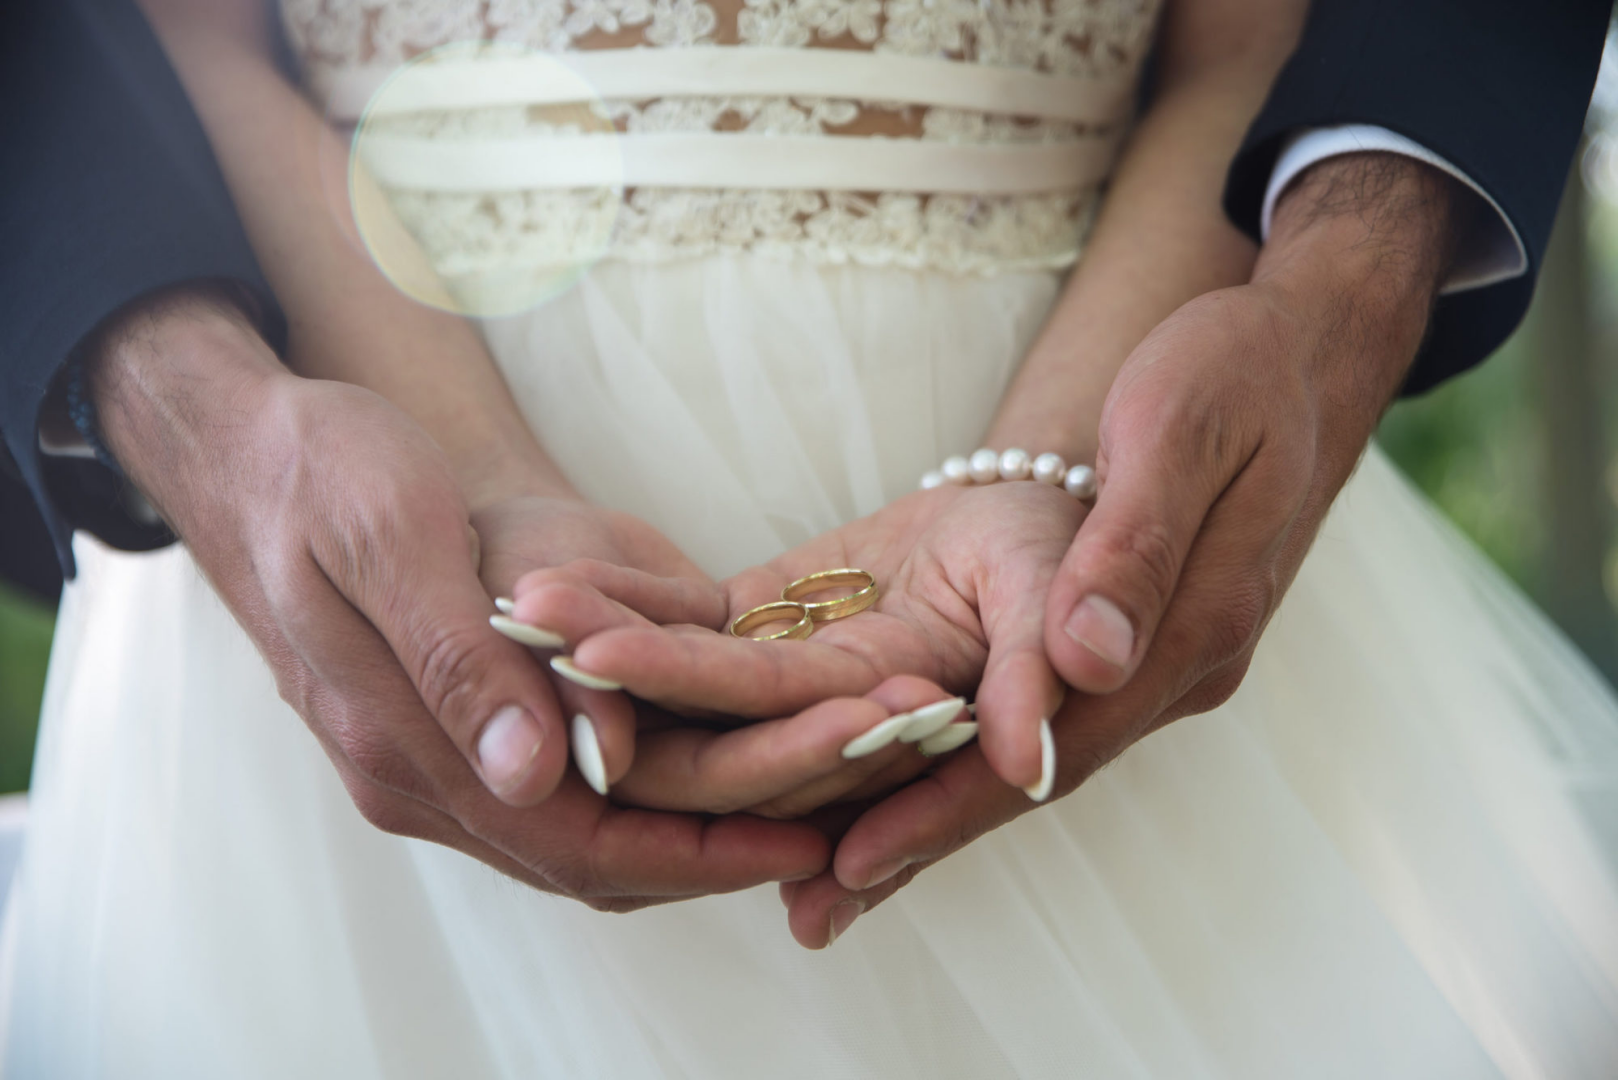 Вступление в брак с заключенным. Брак. Обручальные кольца на руках жениха и невесты. Свадьба руки с кольцами. Фото обручальных колец на руках жениха и невесты.